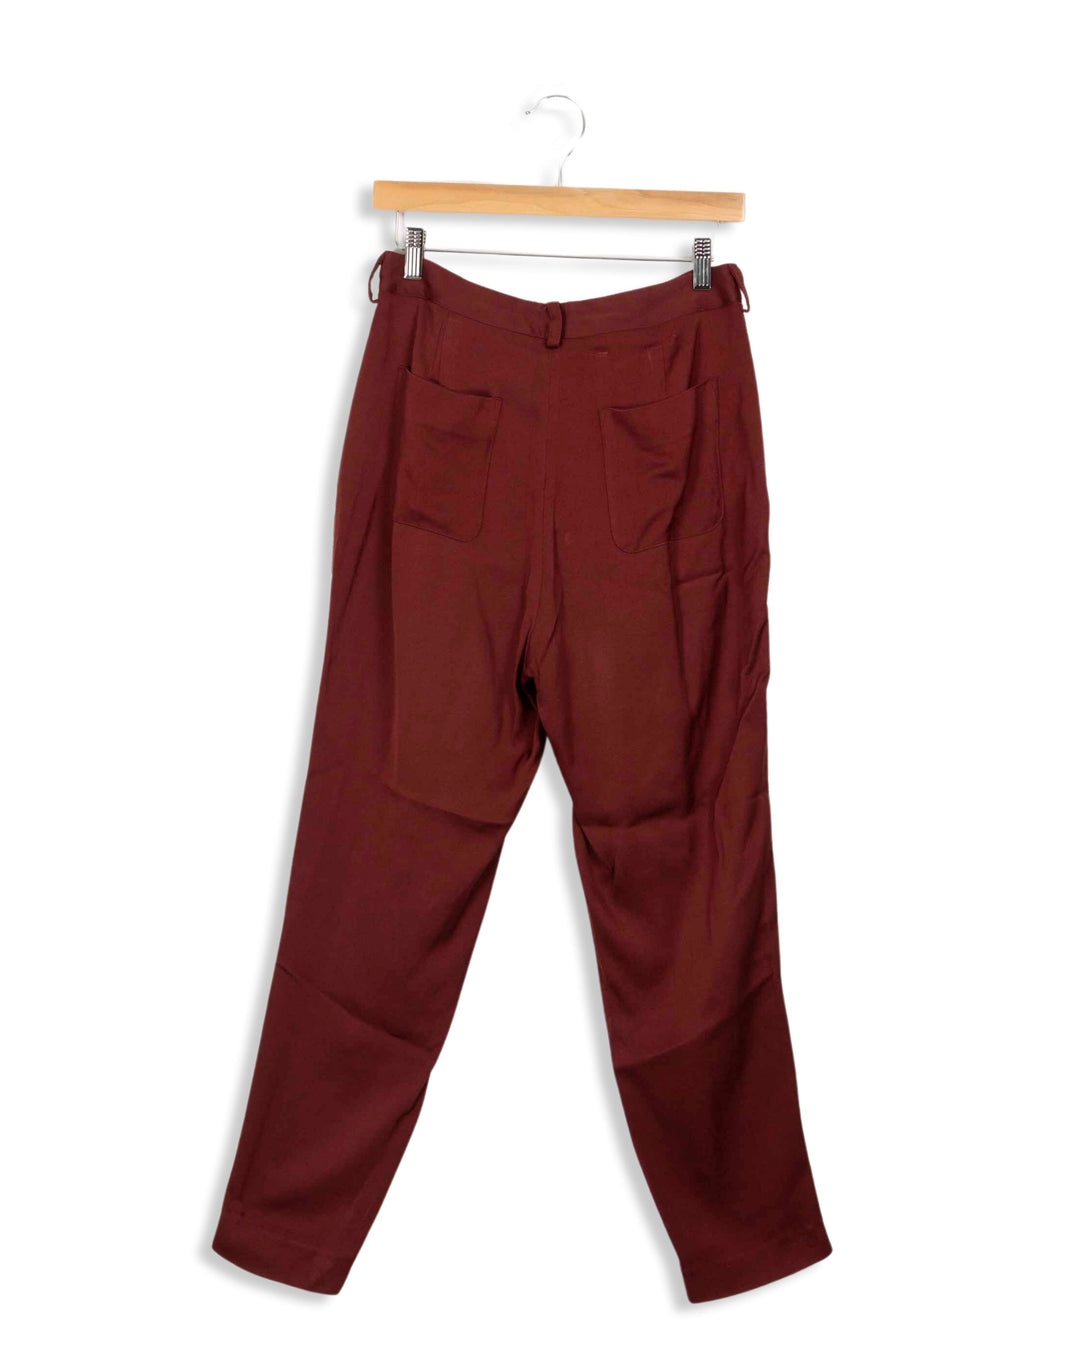 American Vintage brown pants - M